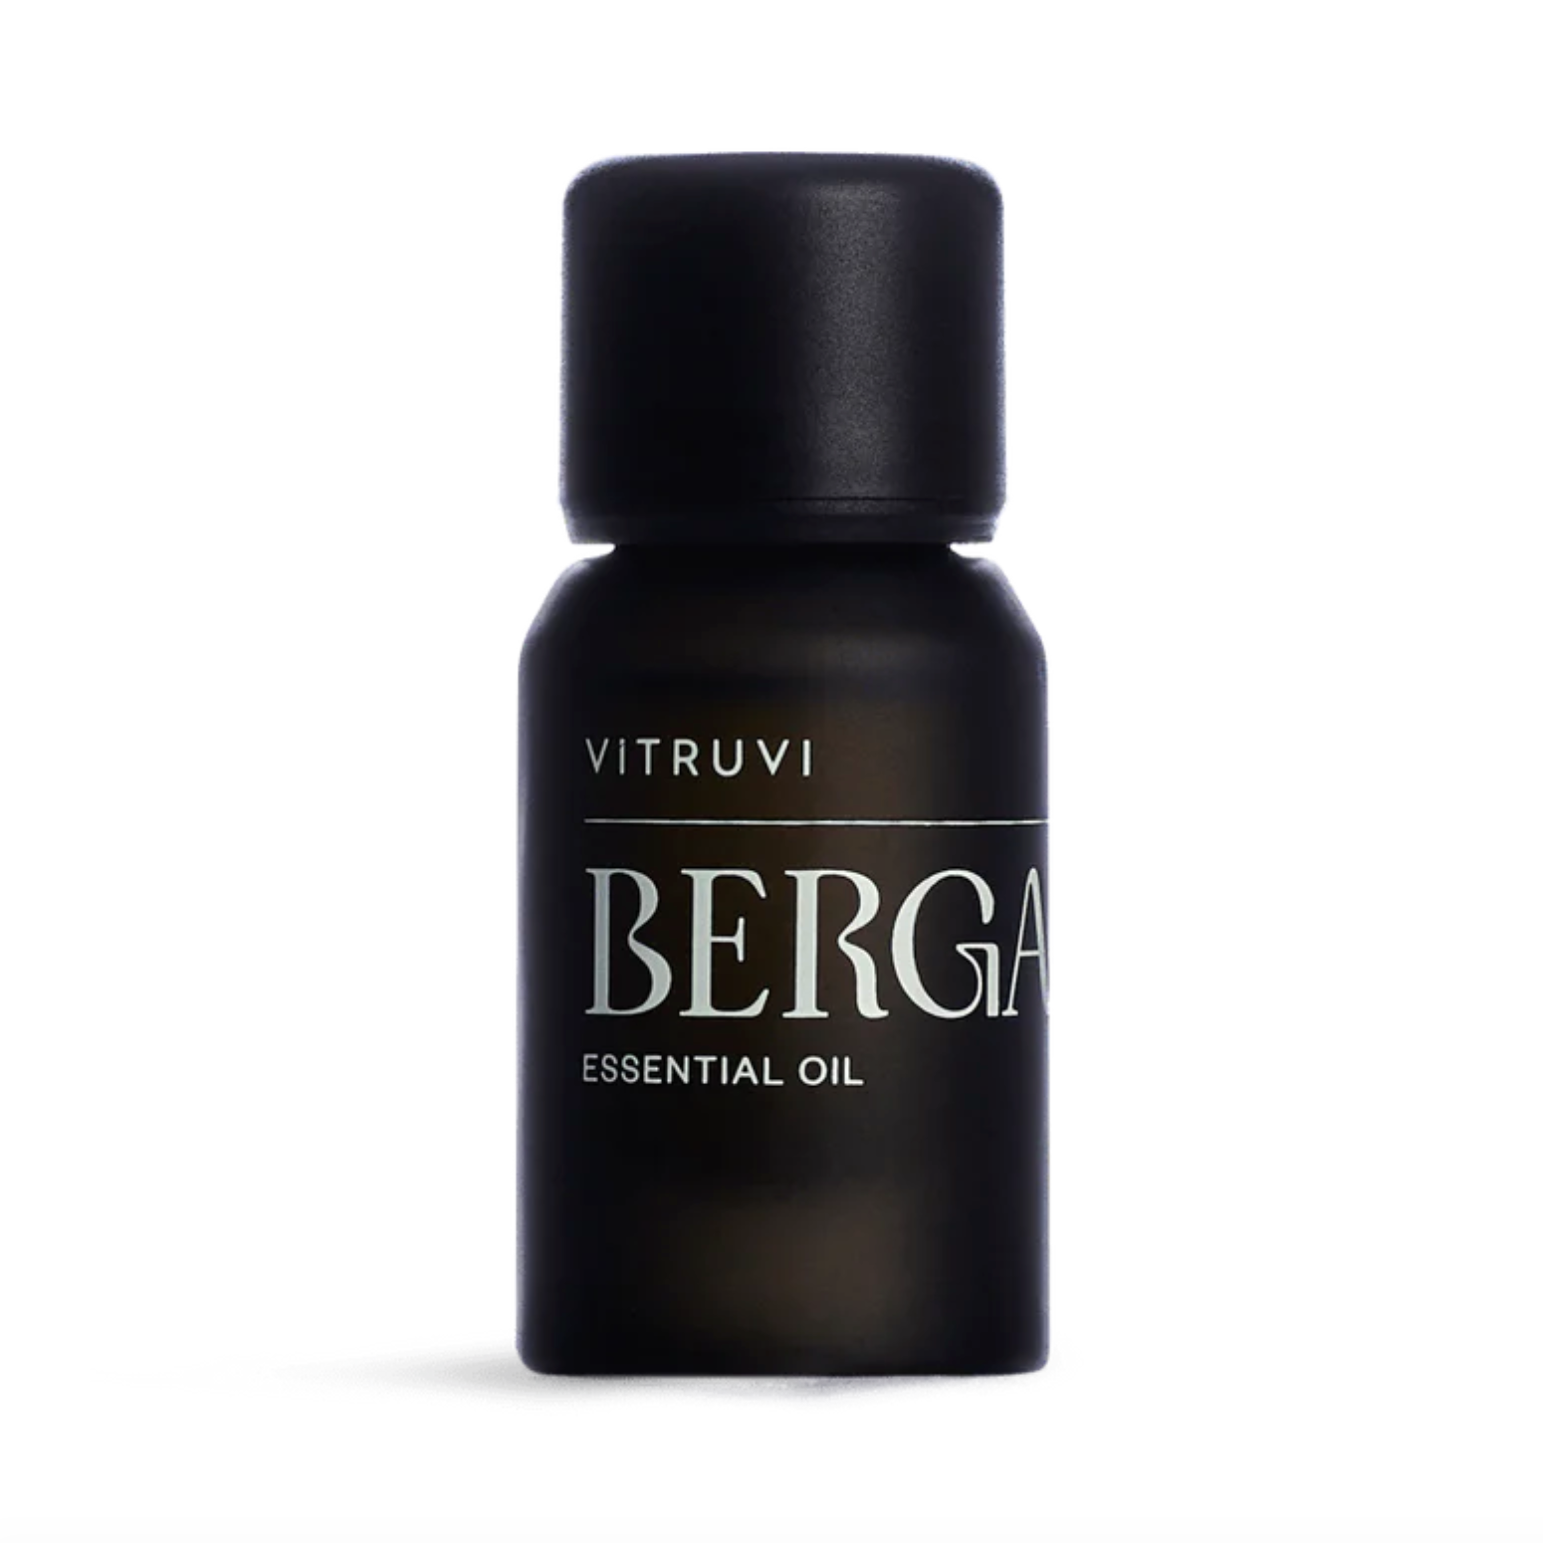 Huile essentielle bio Vitruvi 10 ml -  Bergamote